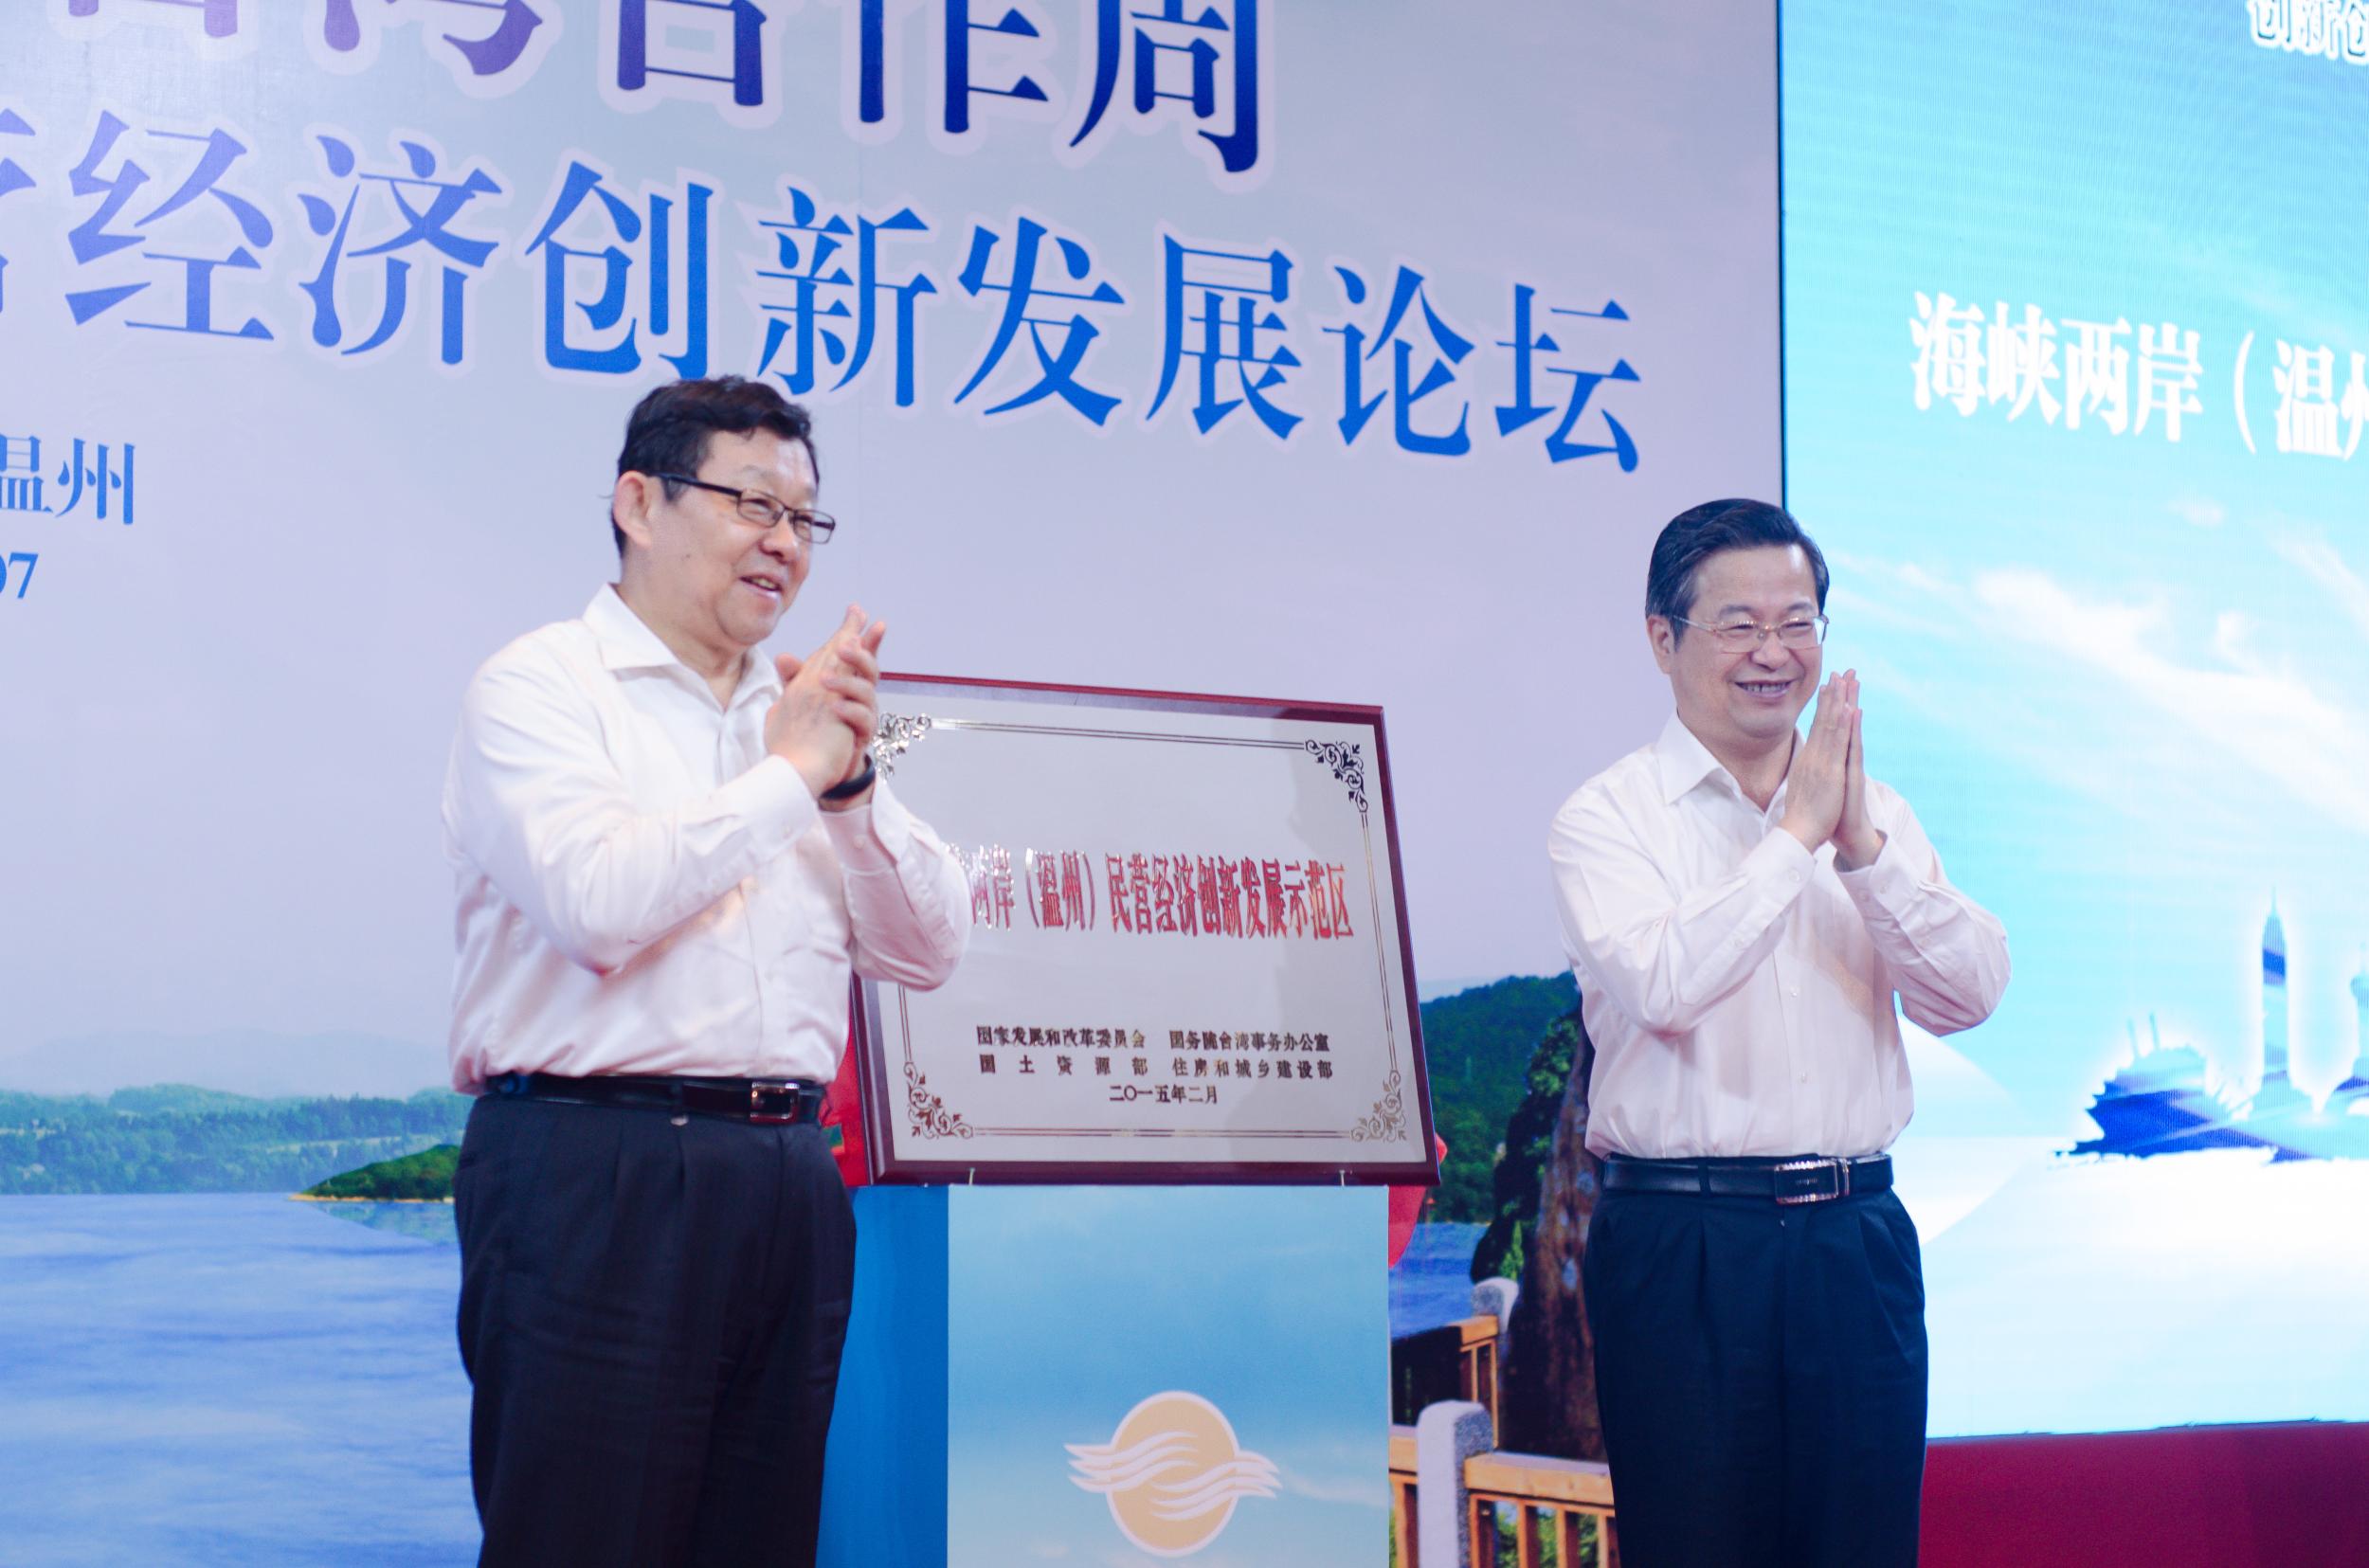 海峡两岸（温州）民营经济创新发展示范区揭牌